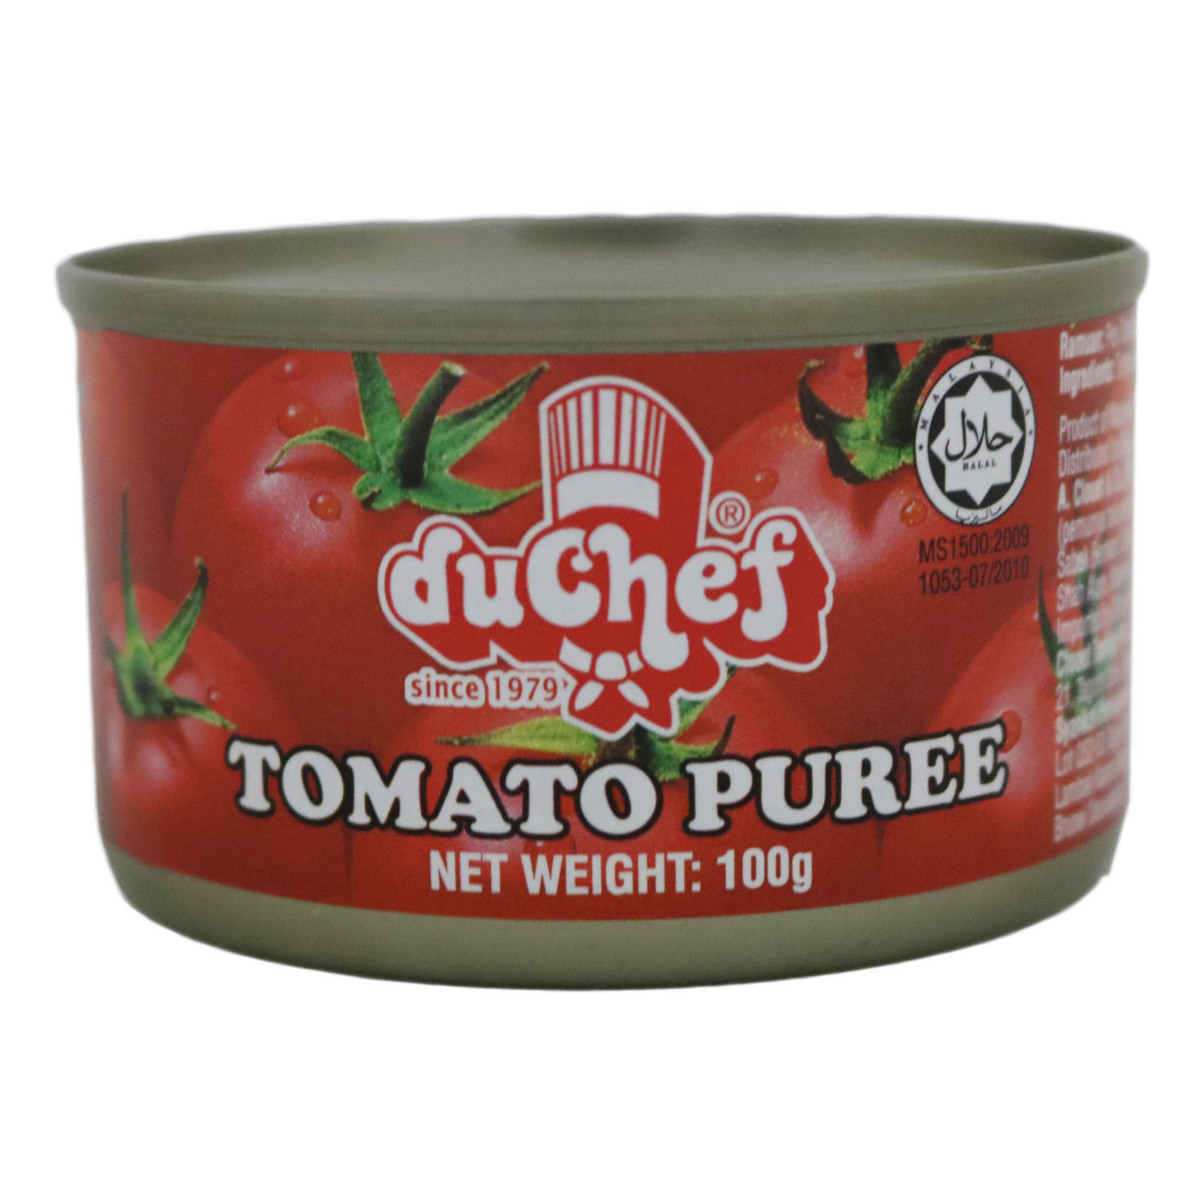 Duchef Tomato Puree 100g